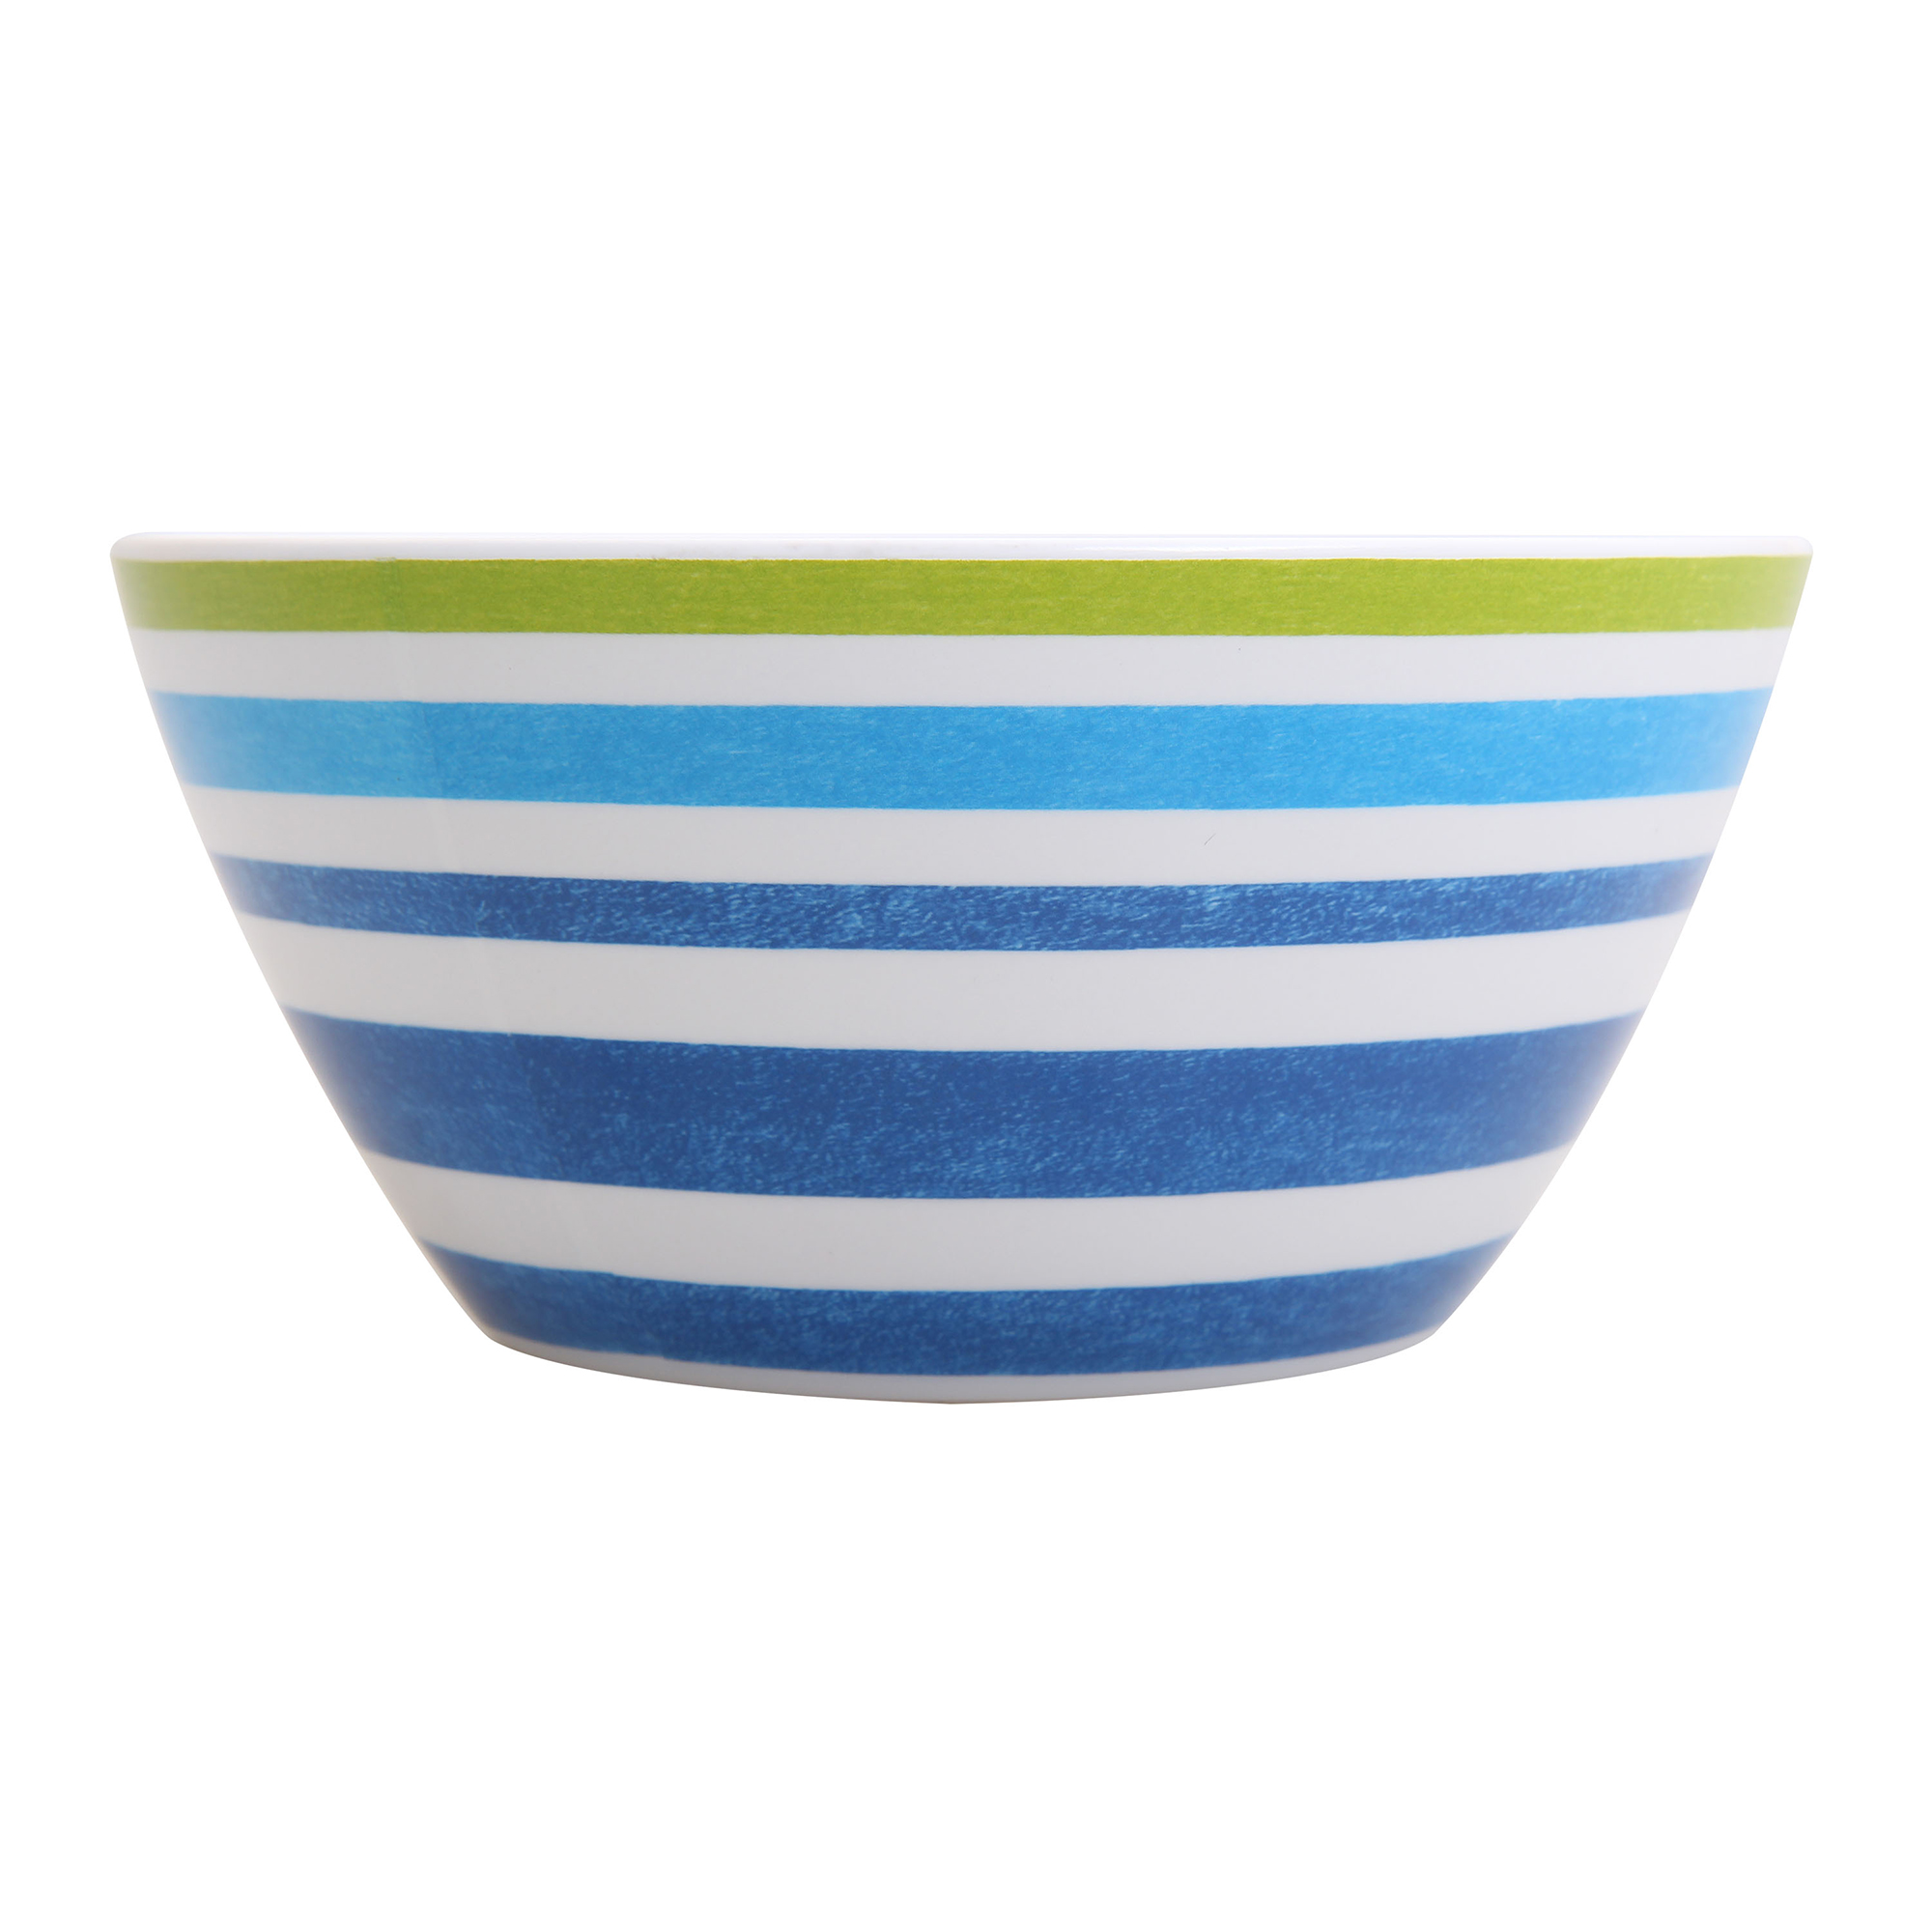 Mainstays Kids Melamine Blue Striped Bowls, Set of 6 - image 2 of 5